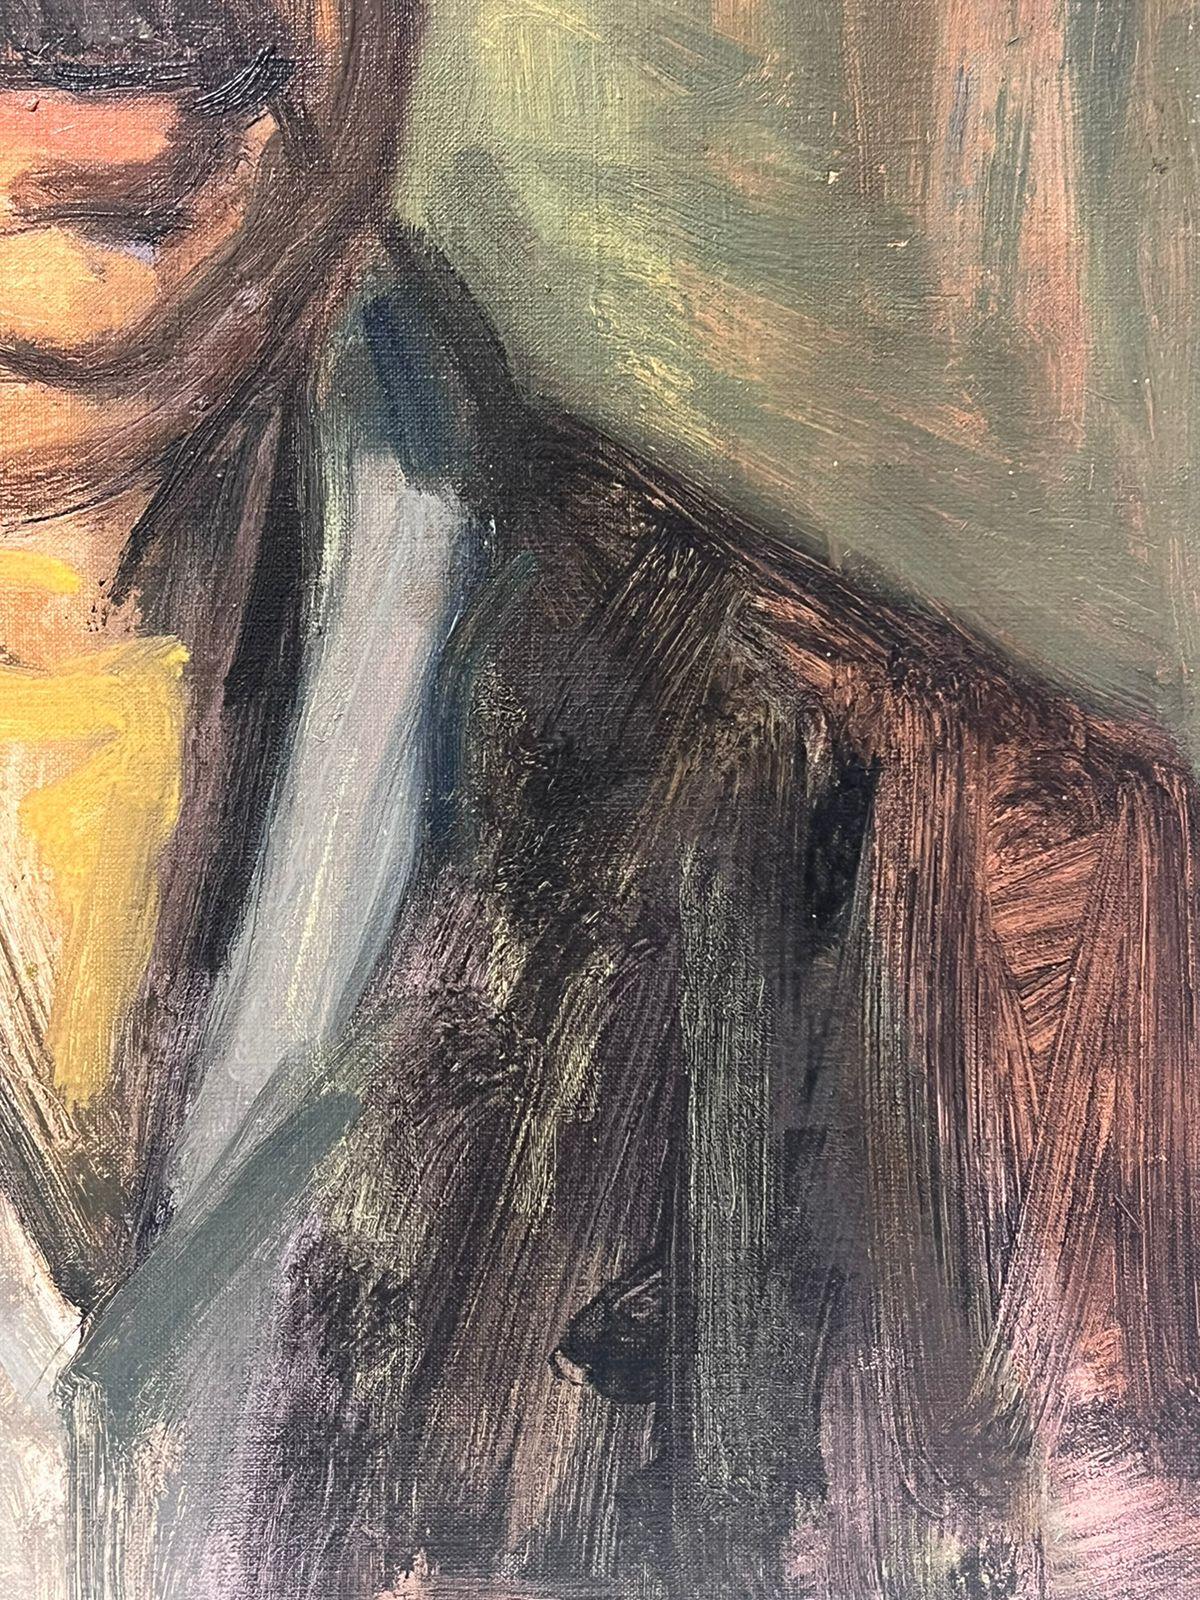 Portrait de M. Epstein
par Jacob Markiel (polonais 1911-2008) *Voir notes signées ci-dessous huile sur toile, non encadrée
toile : 24 x 18 pouces
provenance : la propriété de l'Artistics, sud de la France
état : très bon et sain

Jacob Markiel est